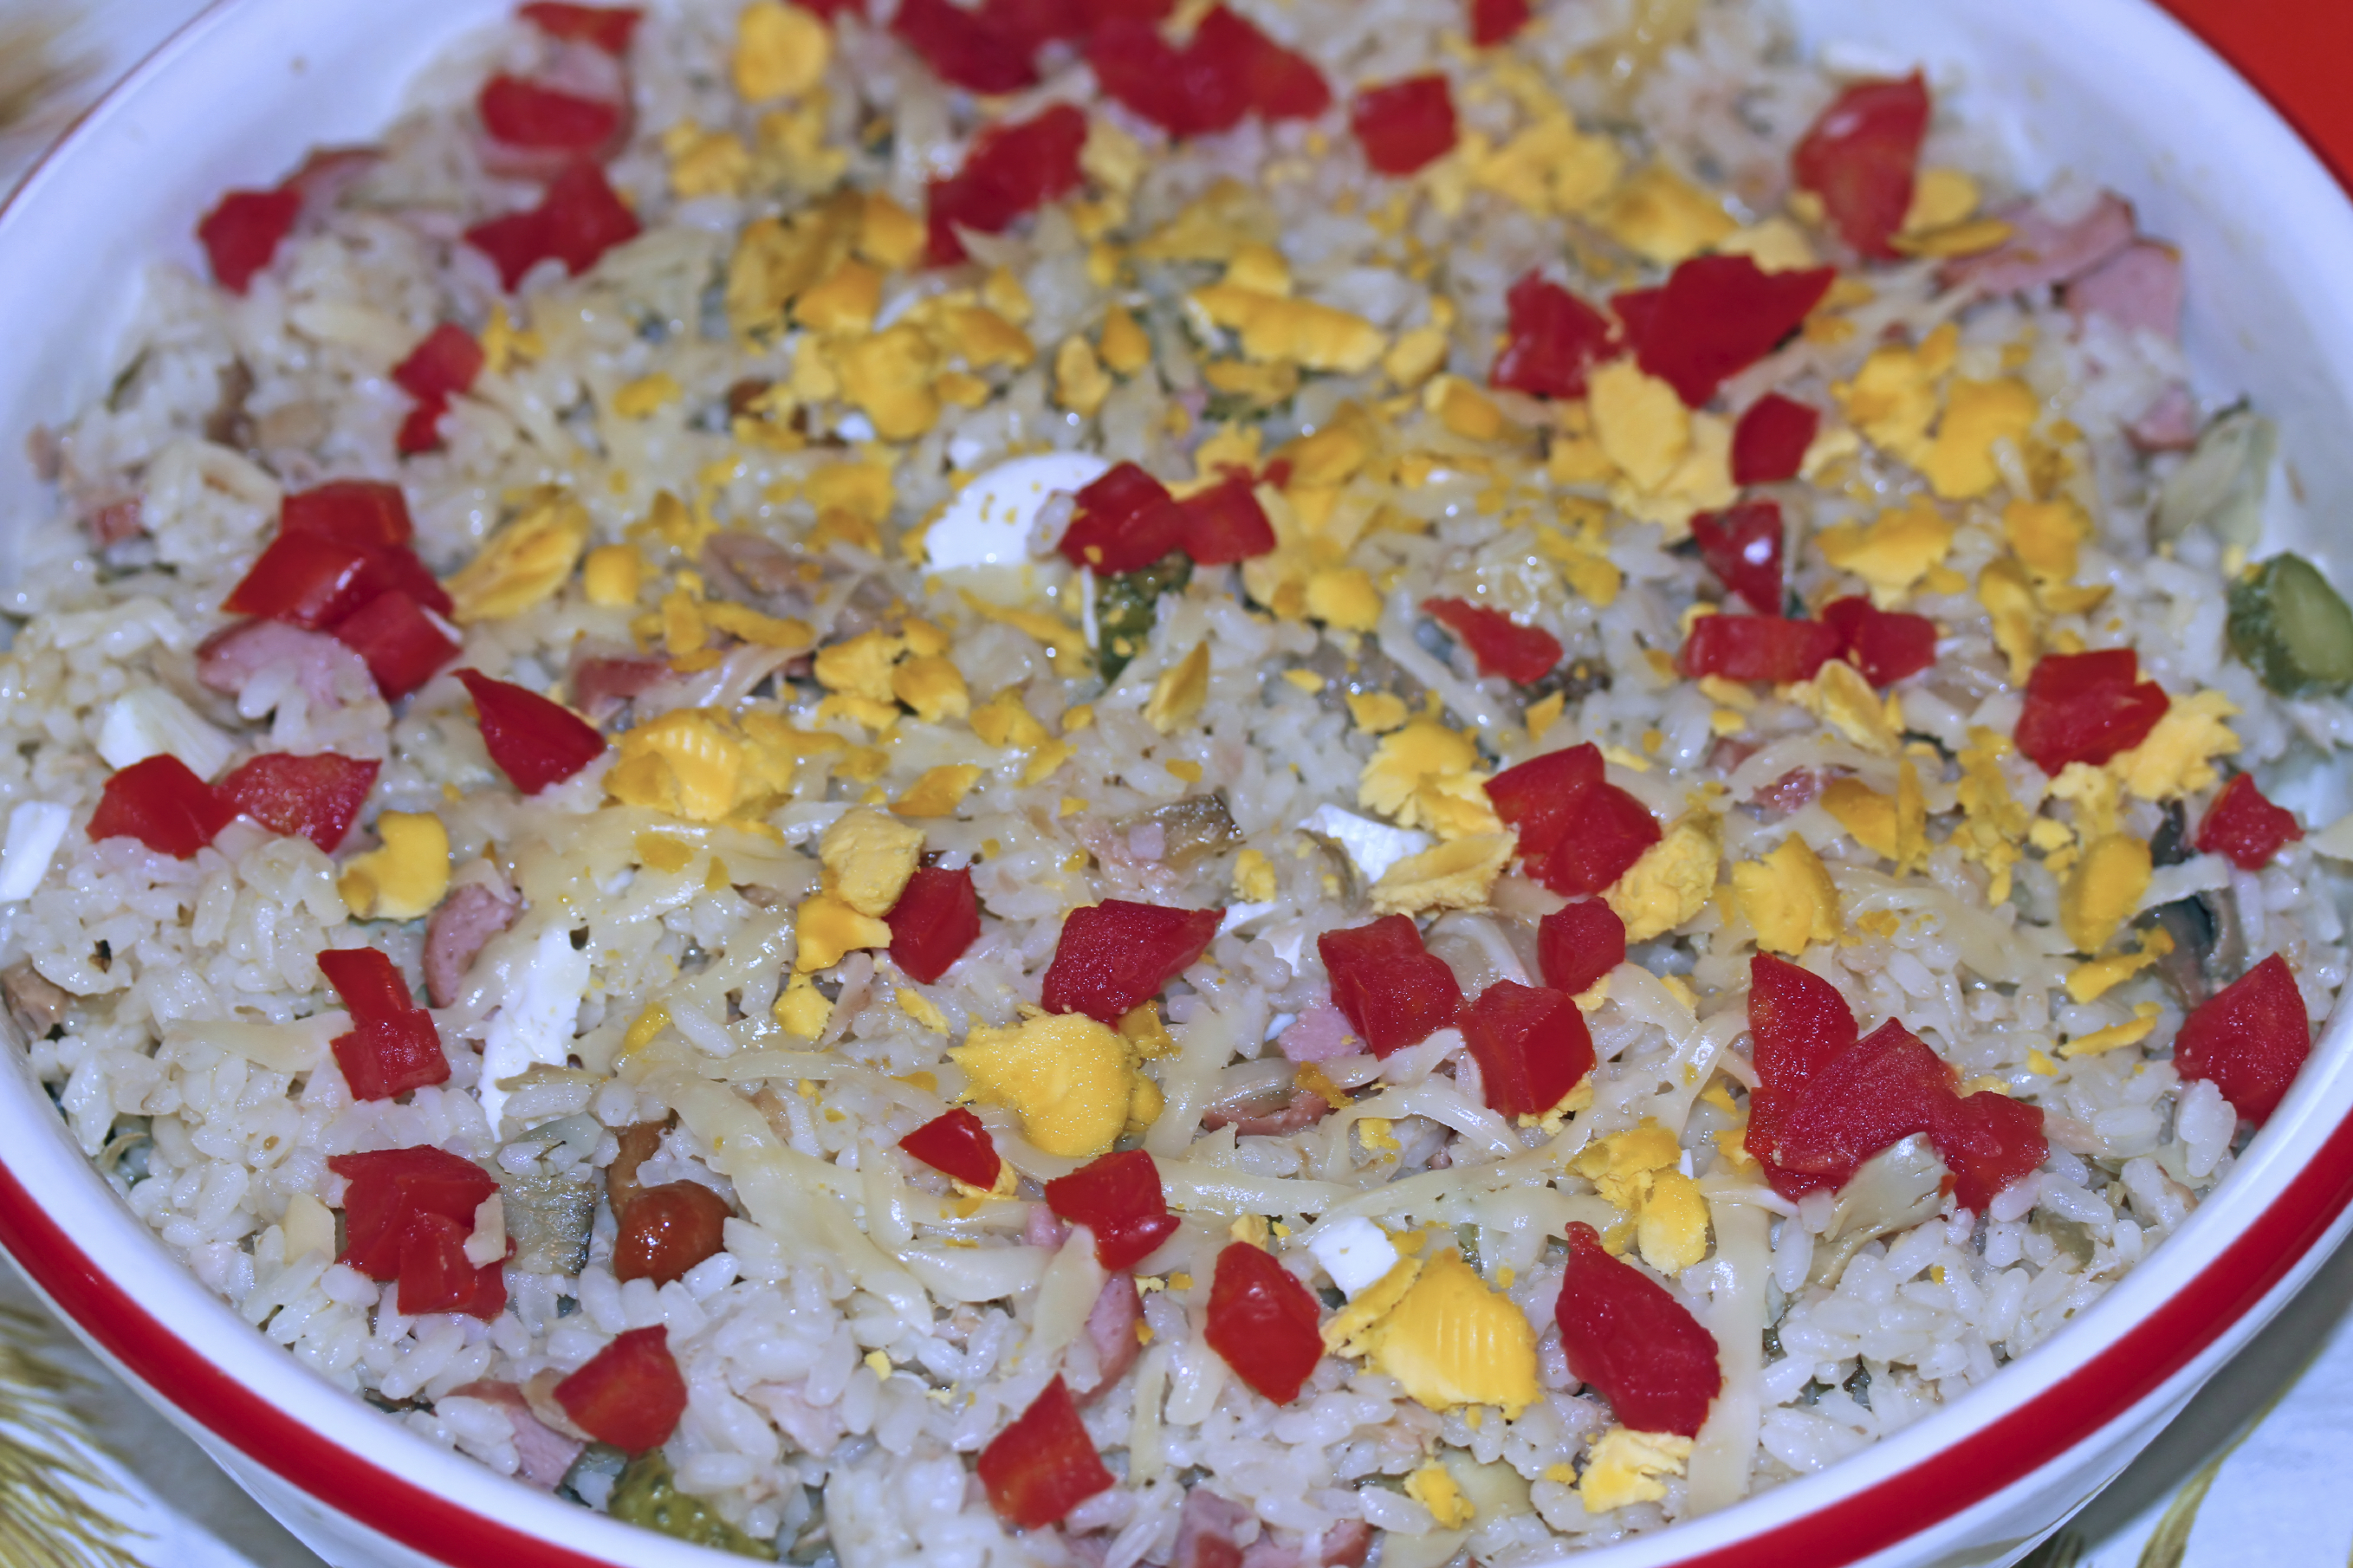 Ensalada de arroz, bonito, anchoas y huevos duros